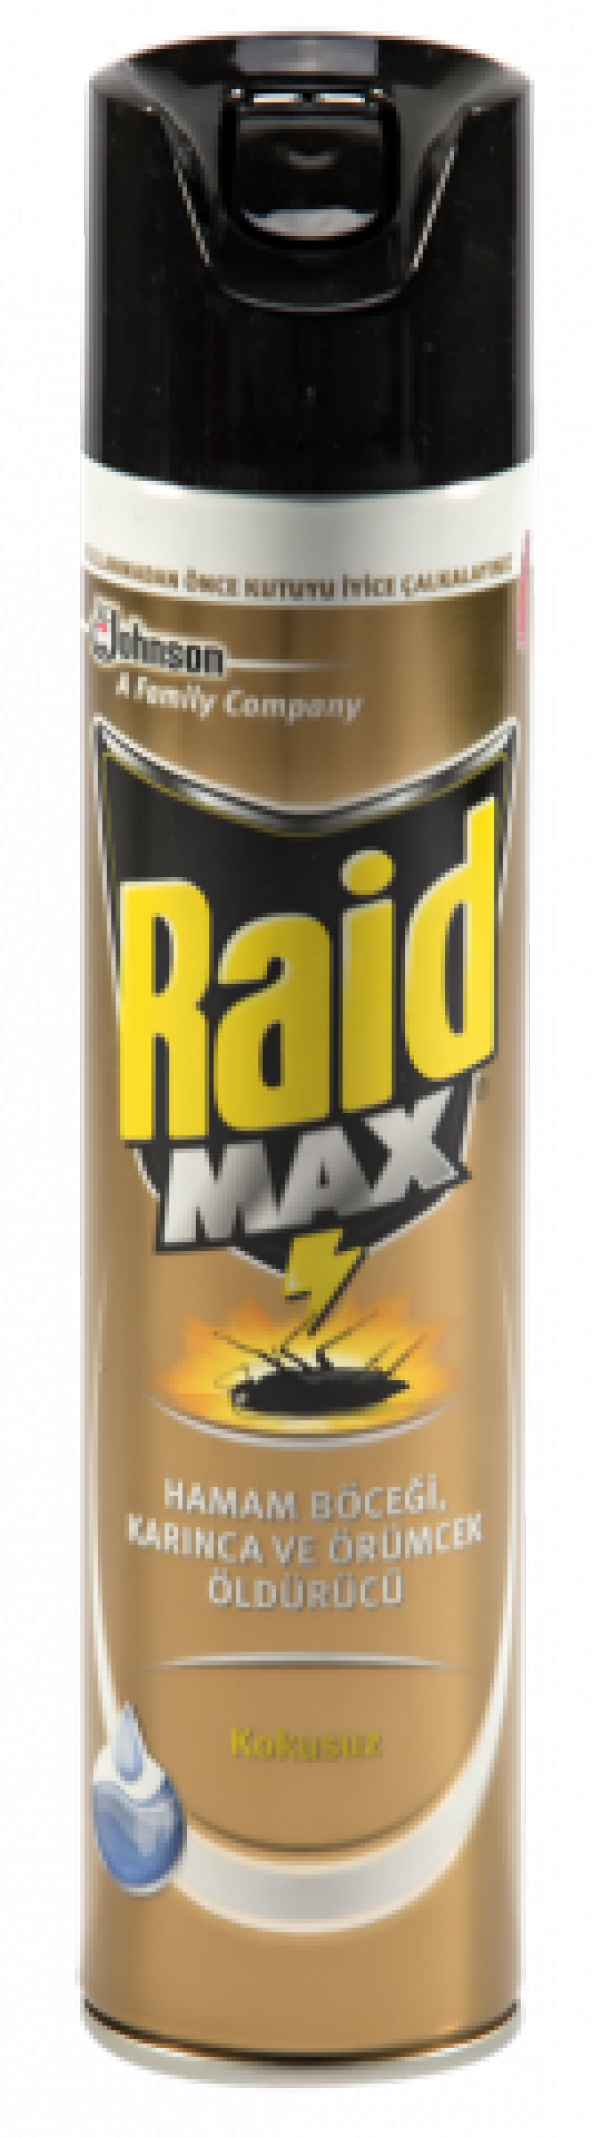 Raid Böceksavar Max 300 Ml